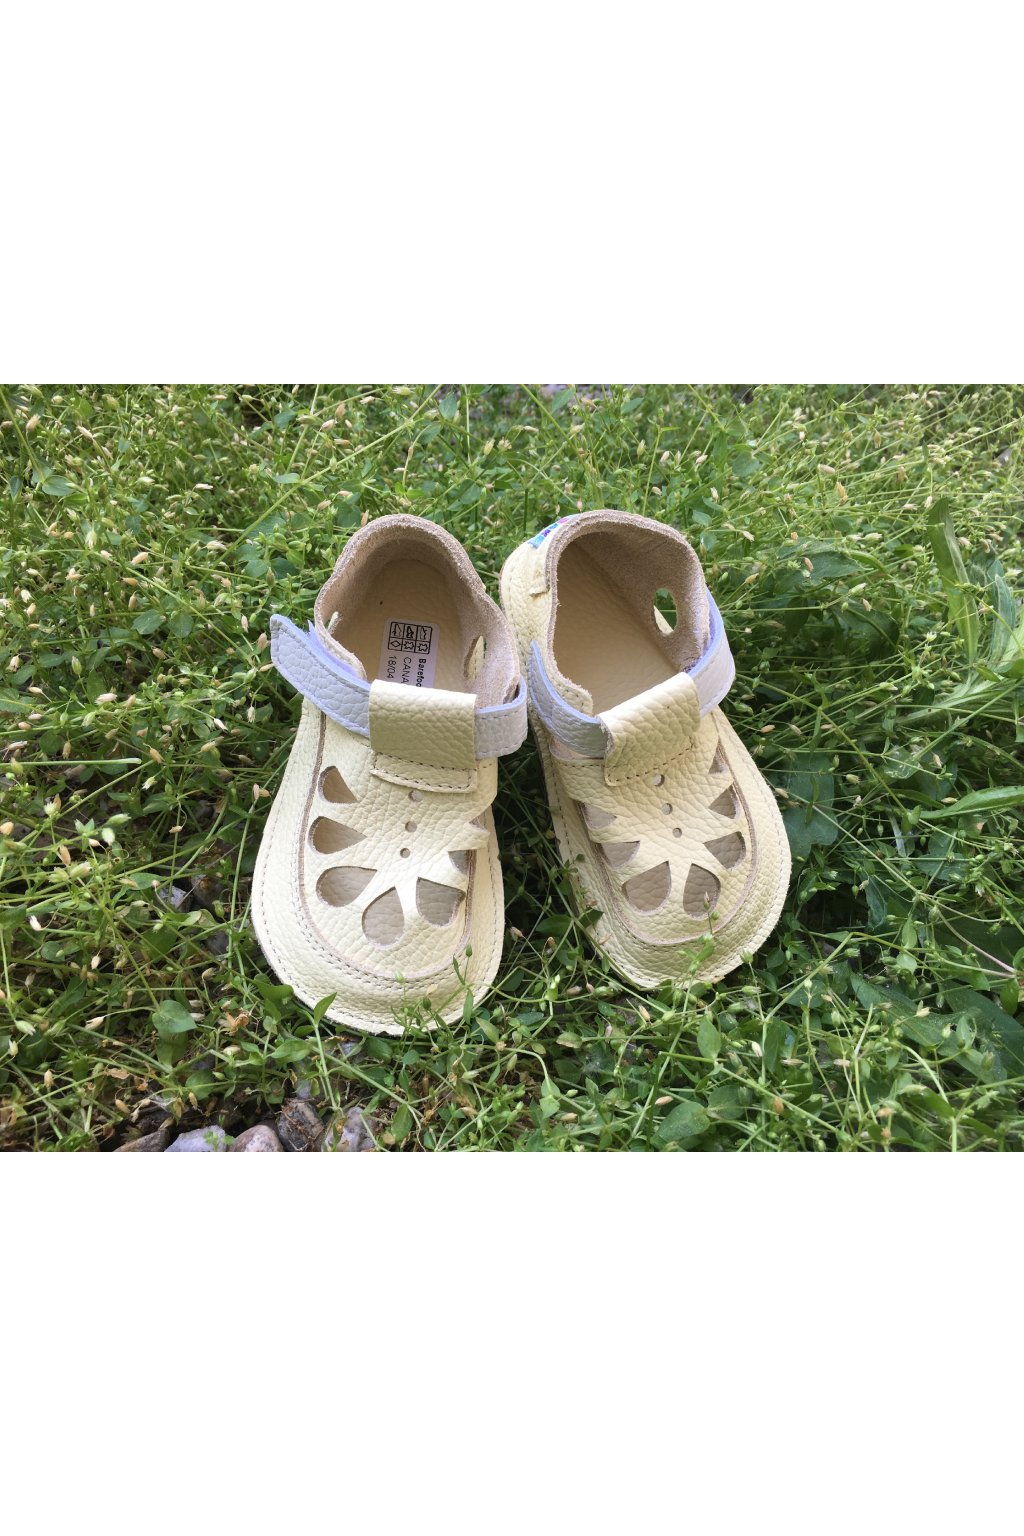 Baby Bare Summer, Bosco Laste barefoot jalatsid - HellyK - Kvaliteetsed lasteriided, villariided, barefoot jalatsid